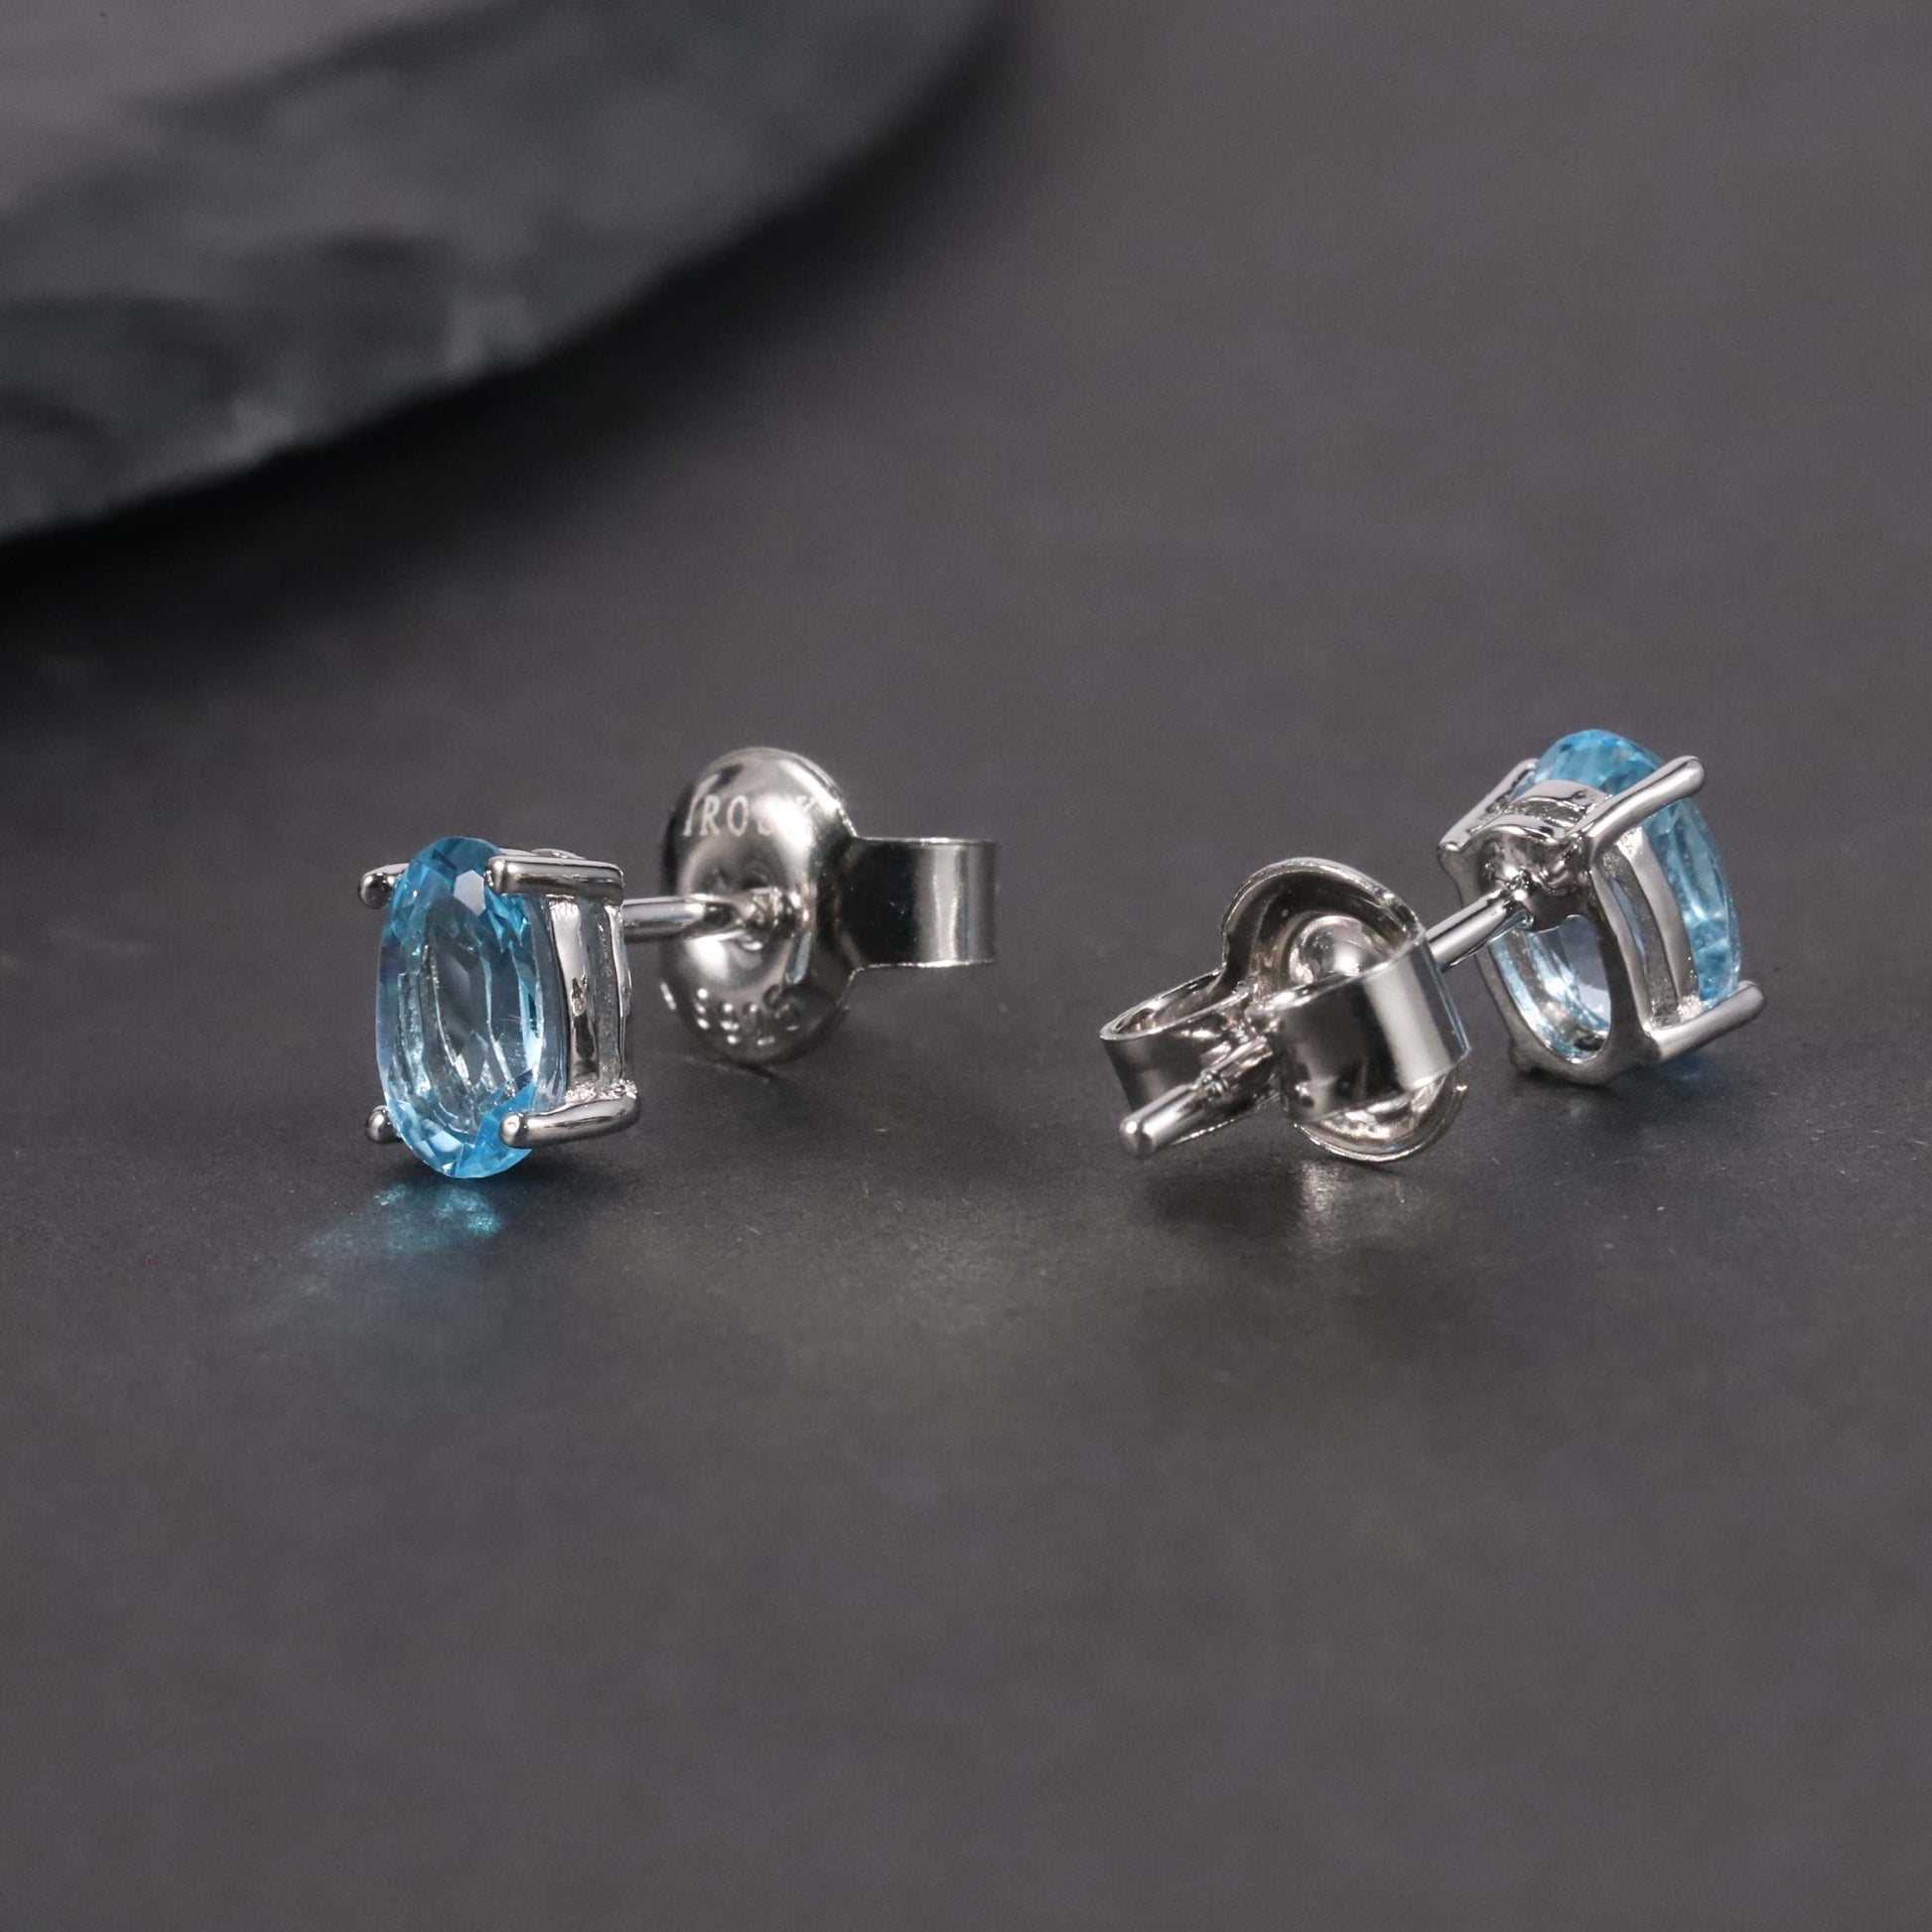 Side view of Swiss Blue Oval Cut Earrings